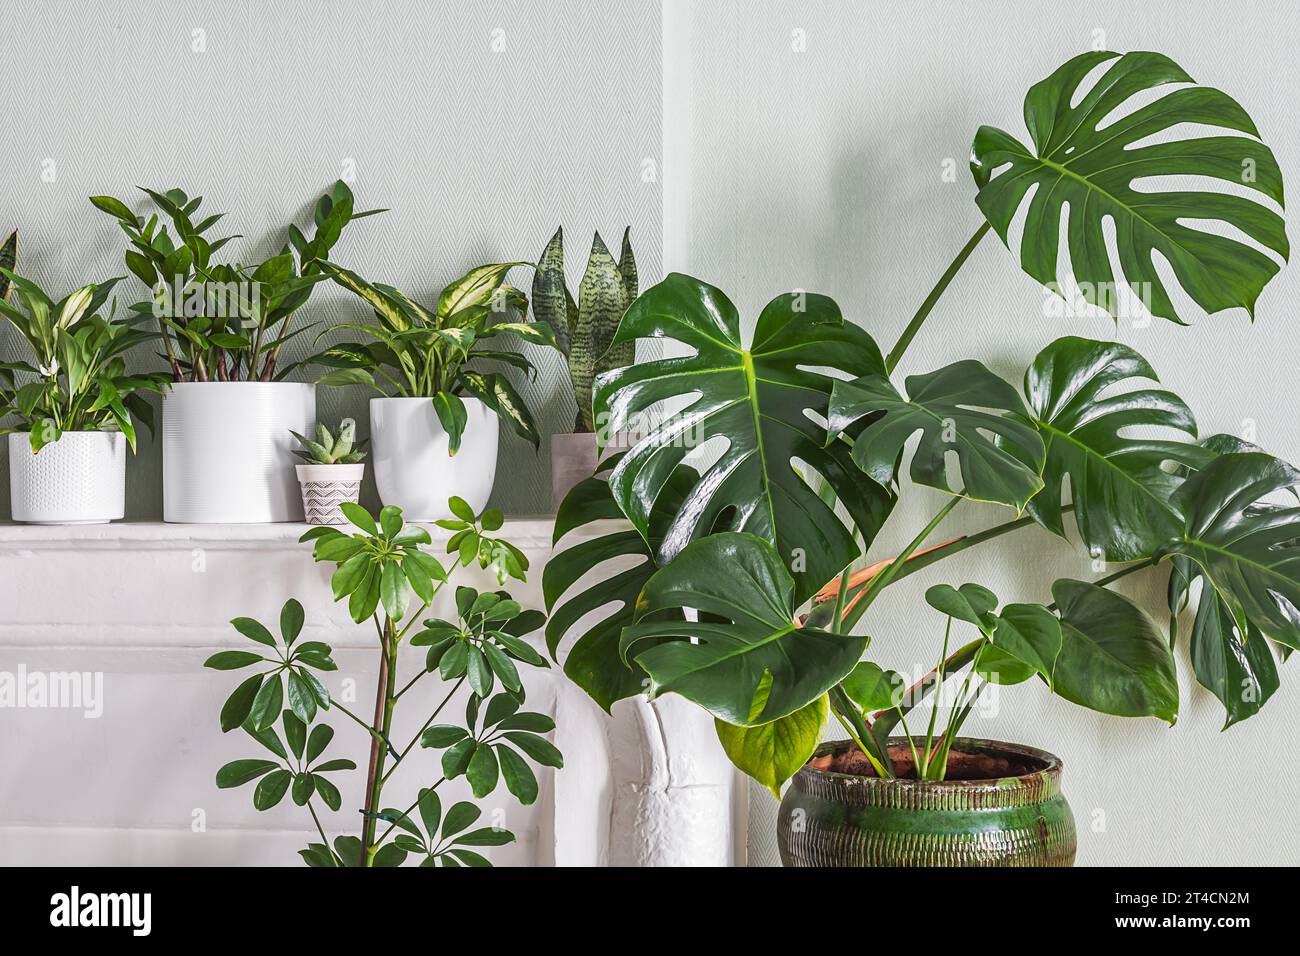 Indoor plants variete - monstera, zz plant, schefflera in the room with light green walls, indoor garden concept Stock Photo